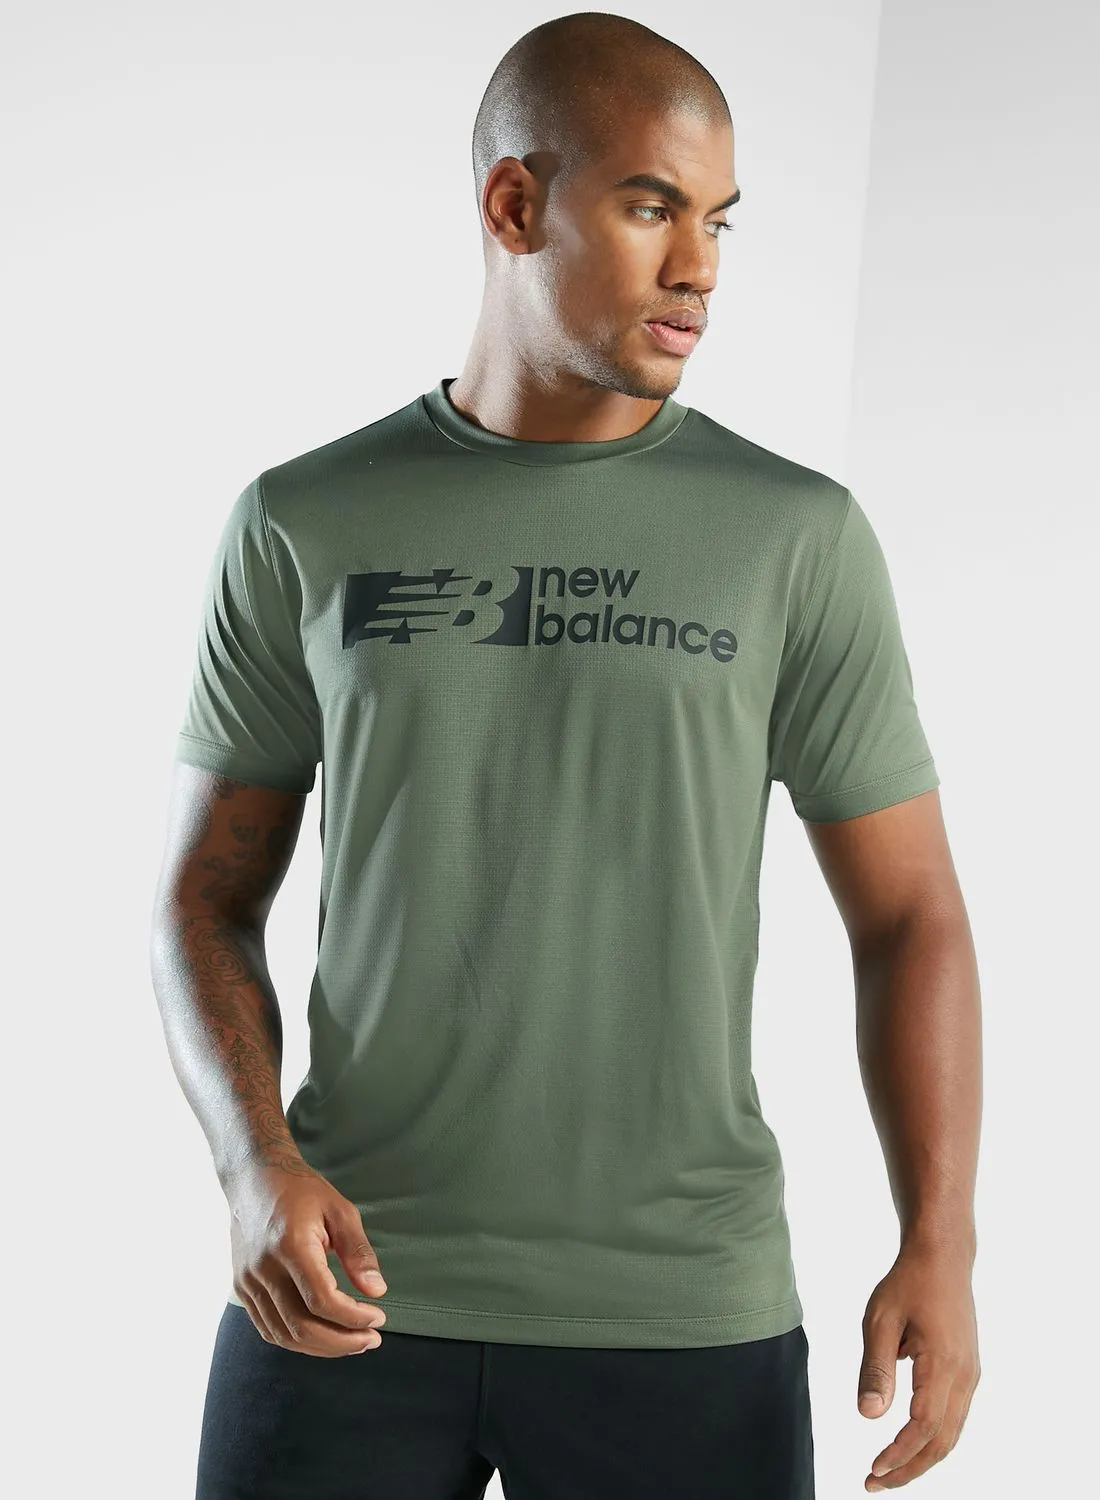 New Balance Tenacity Graphic T-Shirt